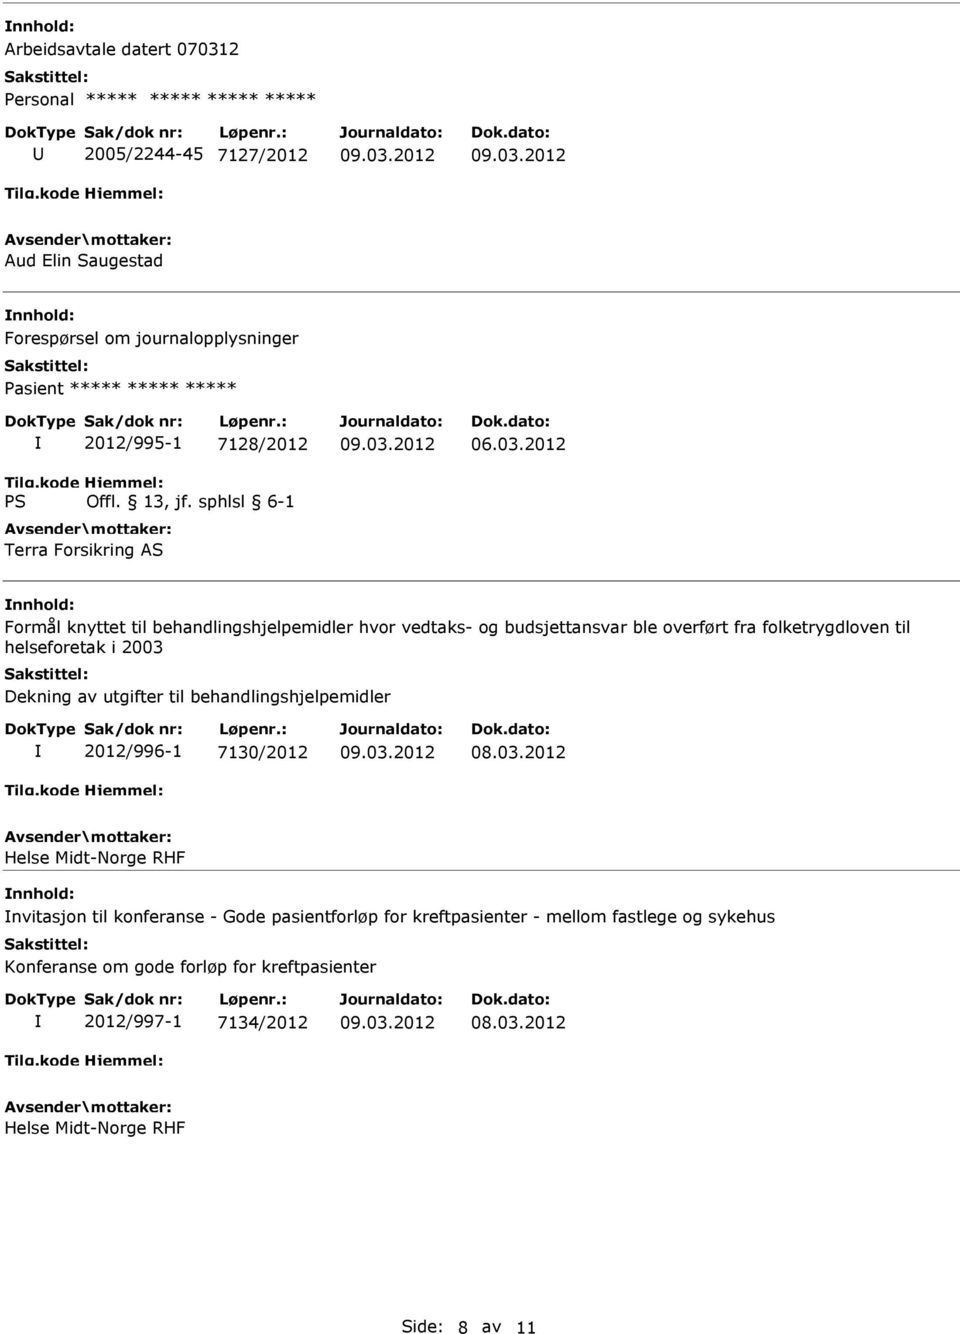 helseforetak i 2003 Dekning av utgifter til behandlingshjelpemidler 2012/996-1 7130/2012 Helse Midt-Norge RHF nvitasjon til konferanse - Gode